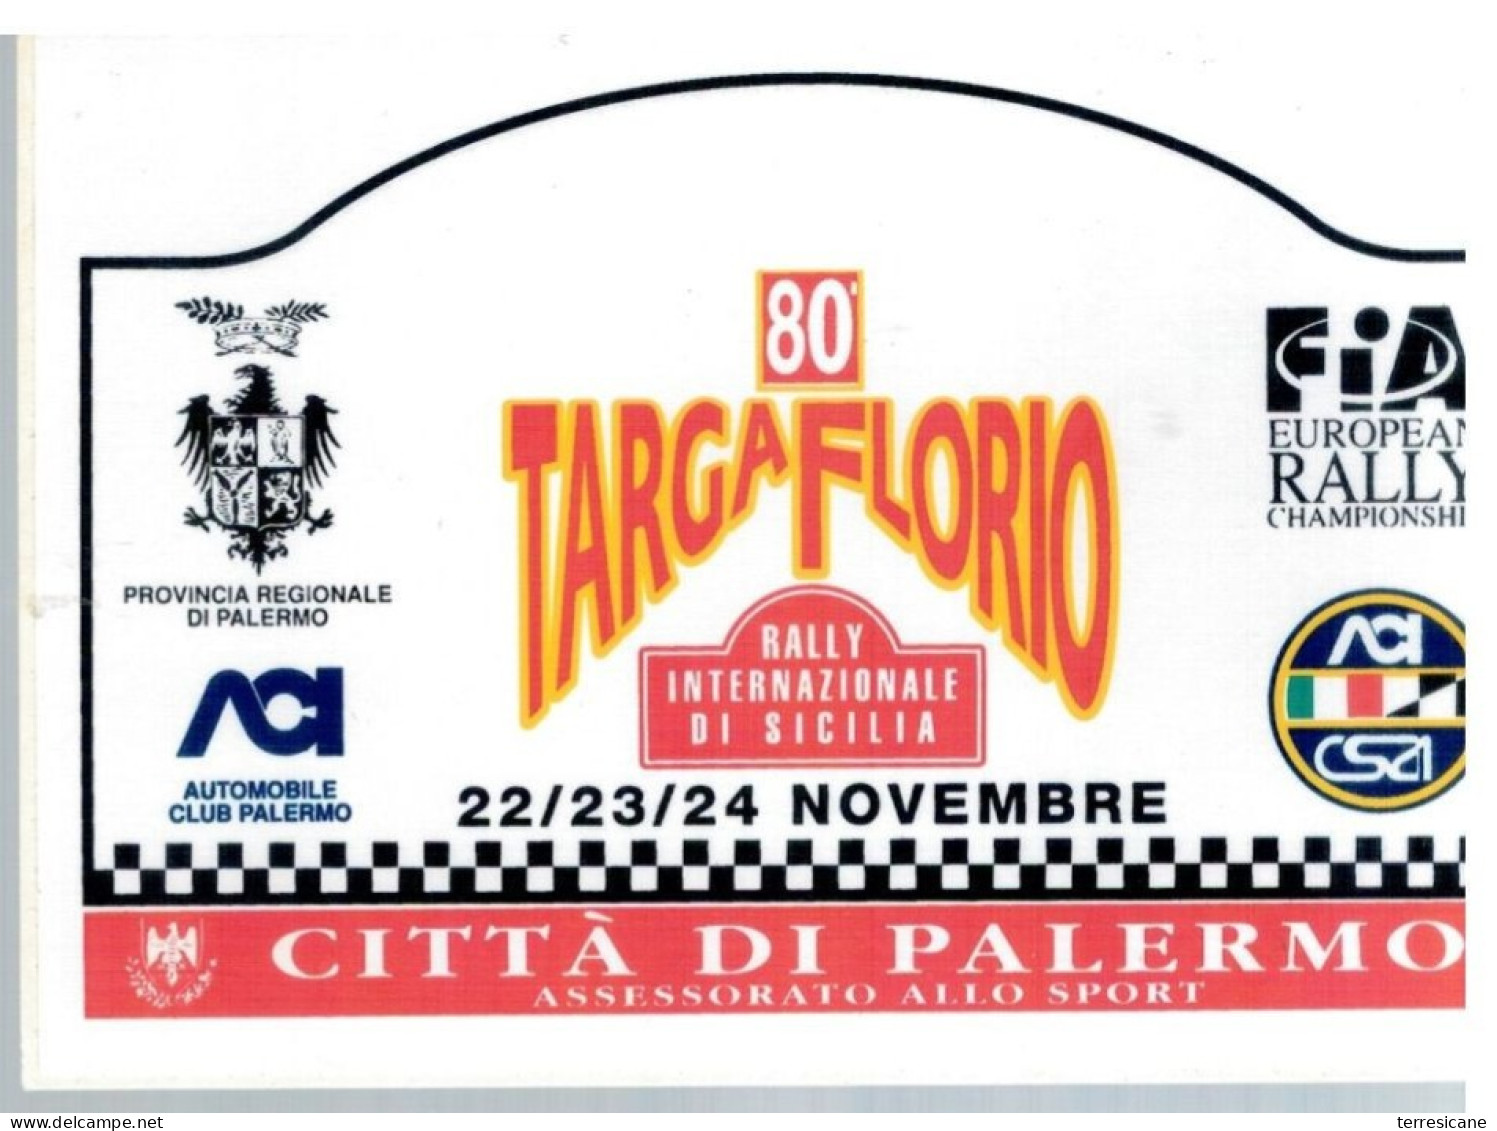 80 TARGA FLORIO 95 RALLY INTERNAZIONALE Placca Adesiva - Autorennen - F1